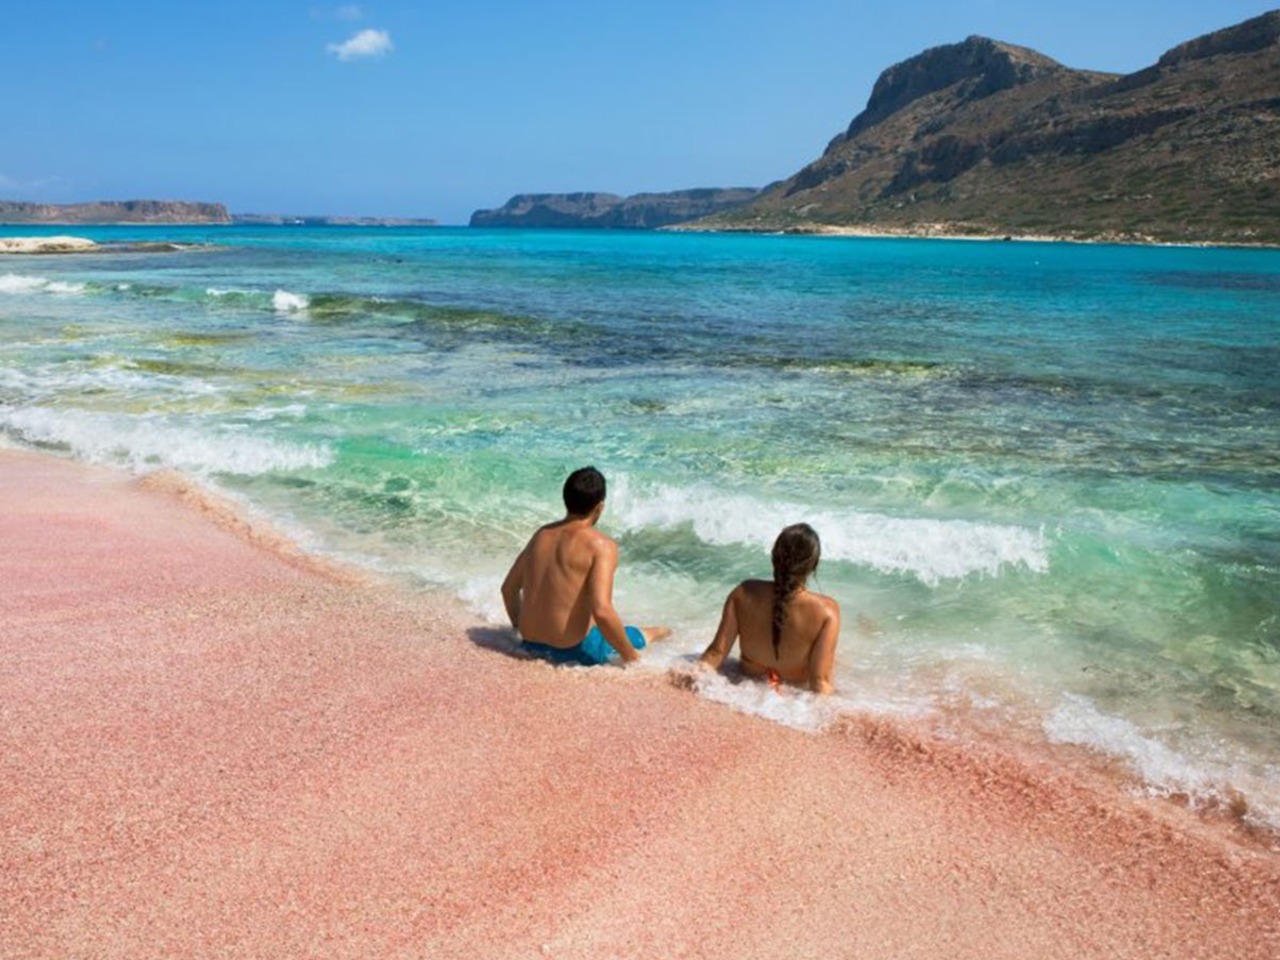 Розовые пески пляжа Элафониси: поездка из Ханьи | Цена 430€, отзывы, описание экскурсии